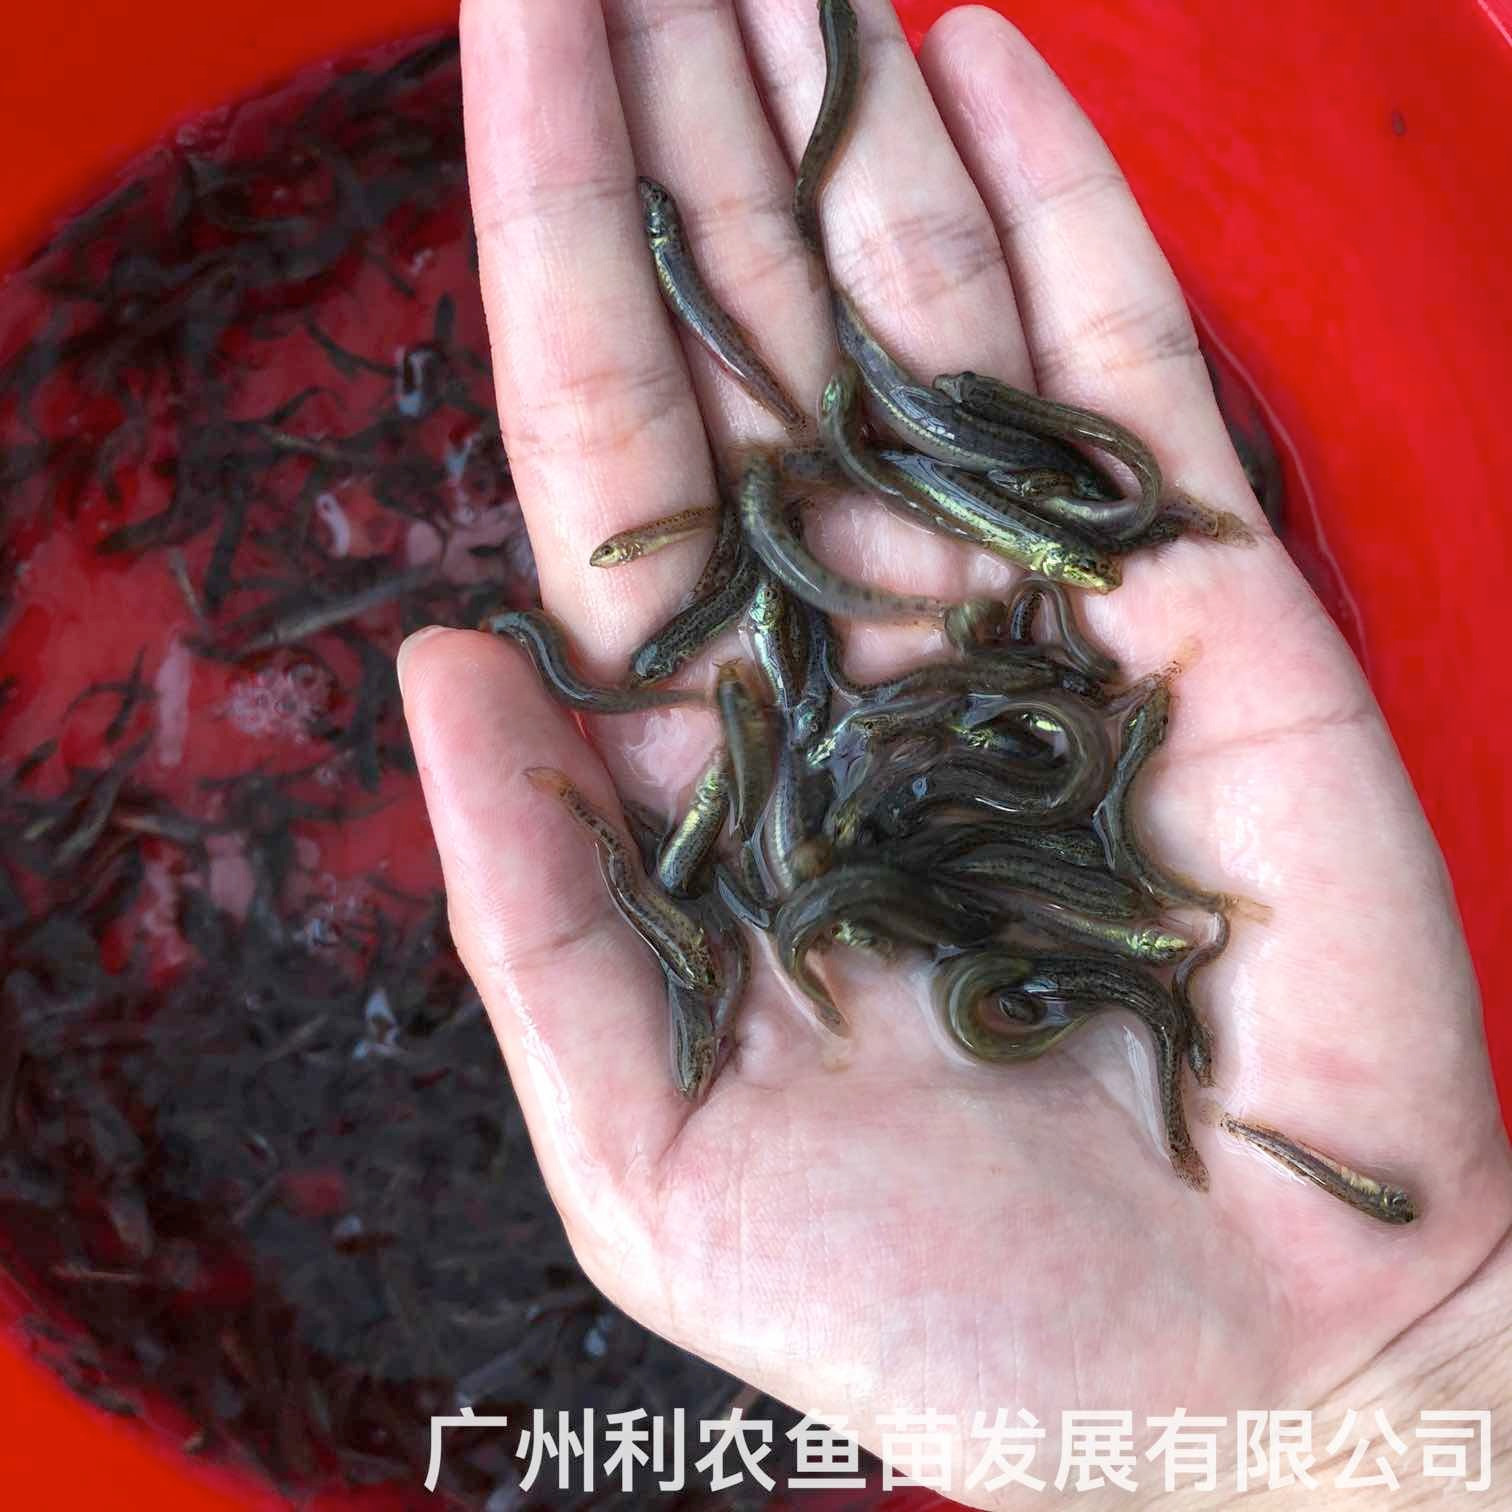 广西崇左台湾泥鳅苗出售广西桂林泥鳅鱼苗批发